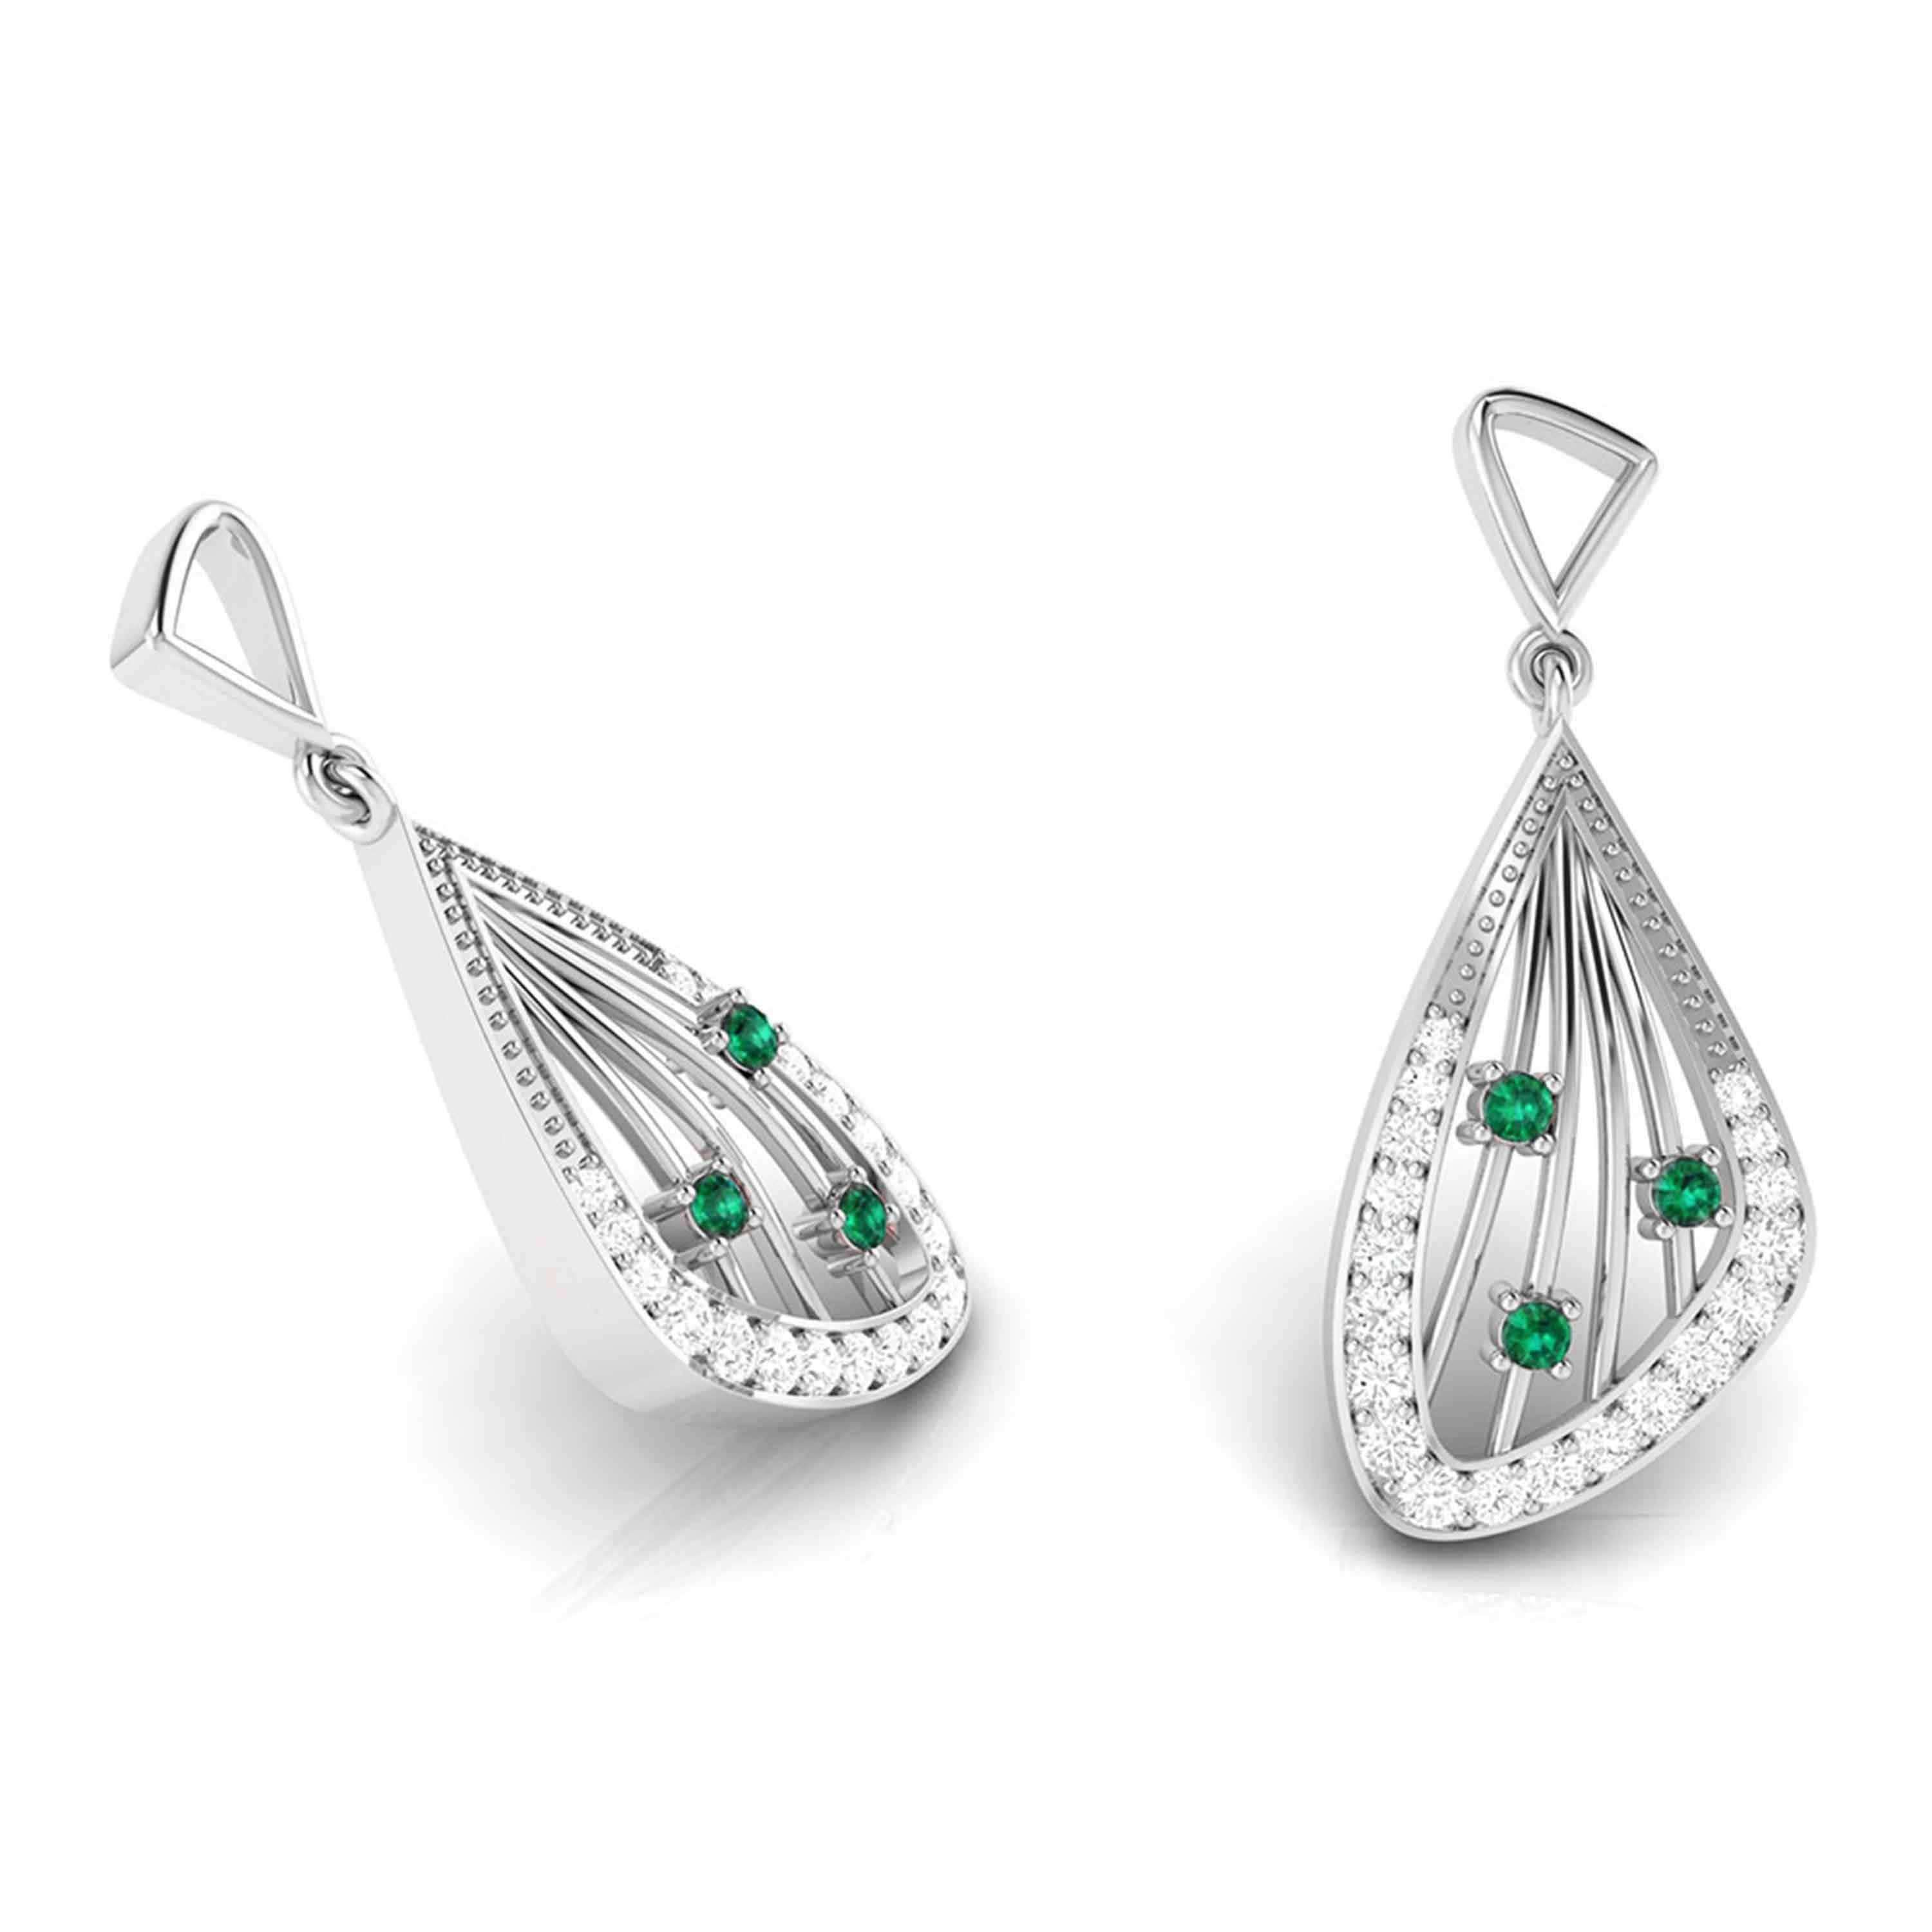 Designer Platinum Diamond Earrings for Women JL PT E NL8592